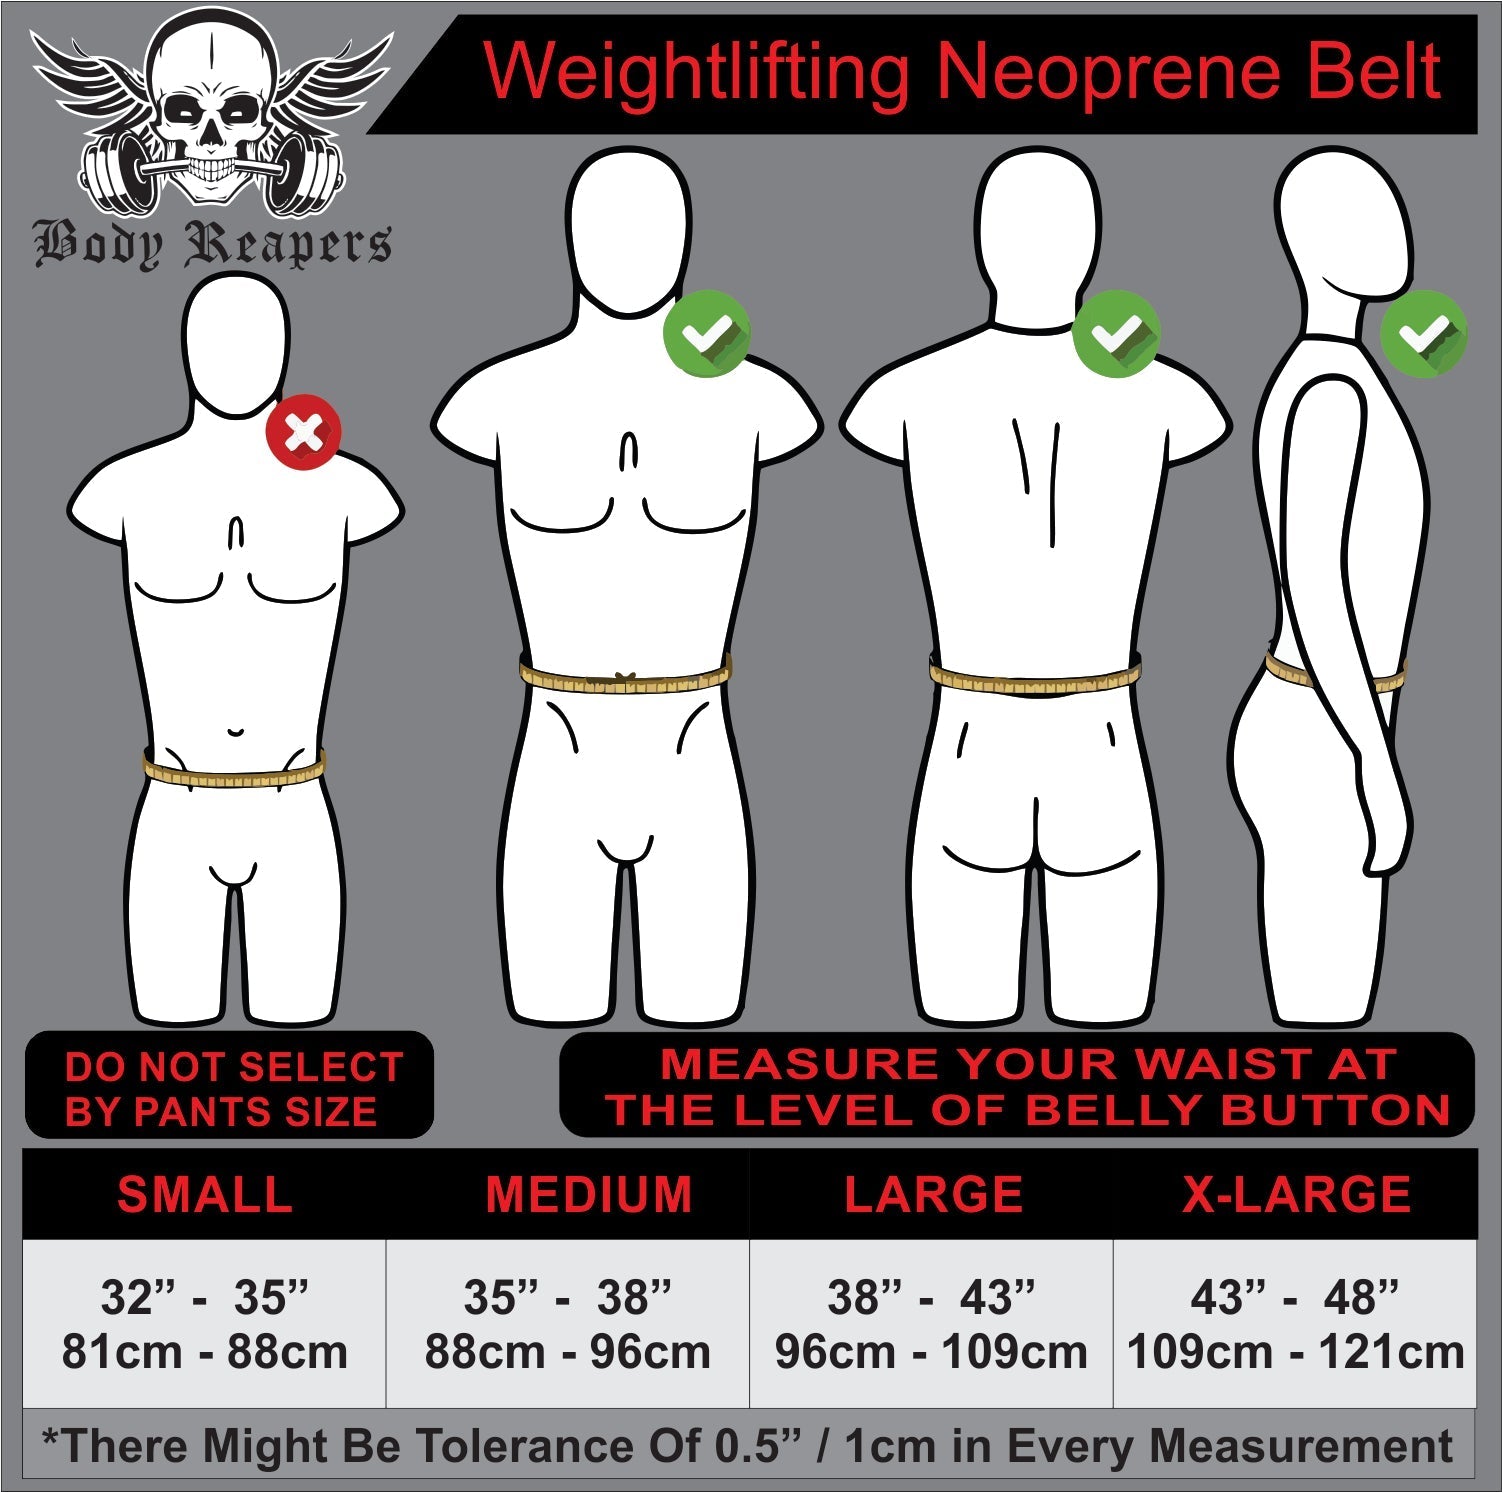 Body Reapers Neoprene 6" Weightlifting Belt Camo Commando